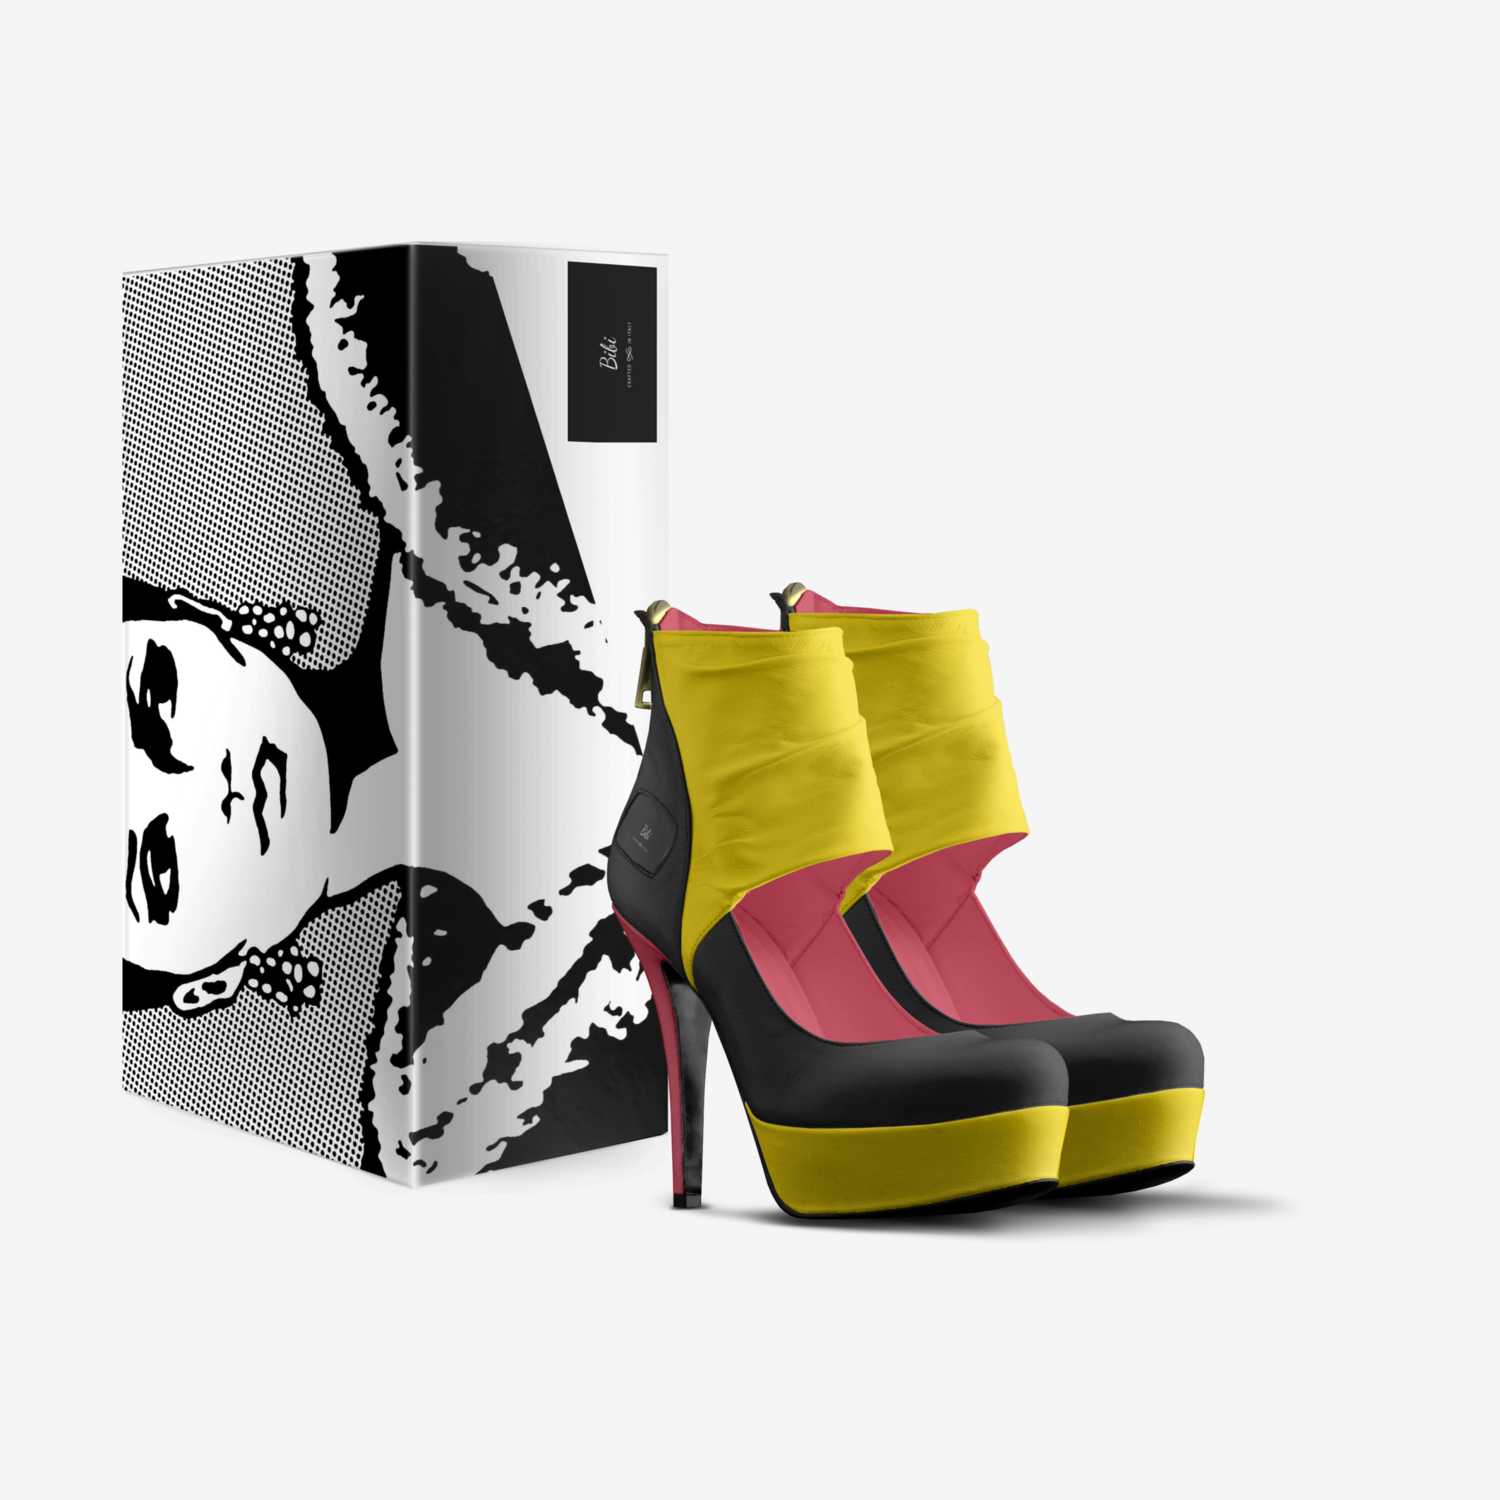 Bibi custom made in Italy shoes by Robel Yemane | Box view